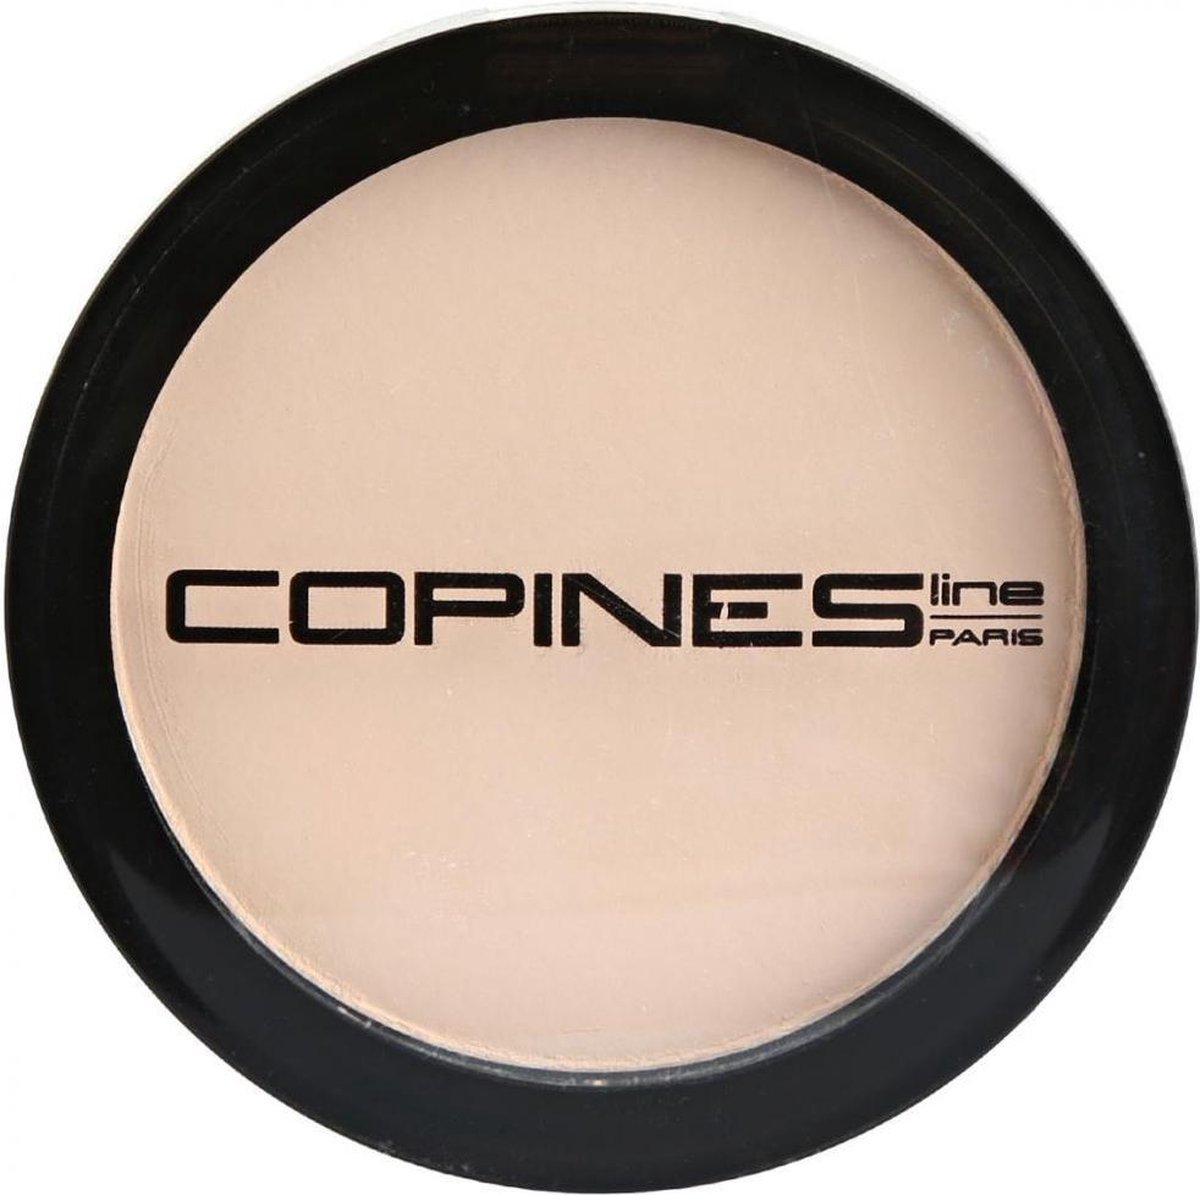 Copines Line Paris Velvet Compact Powder 01 Translucide